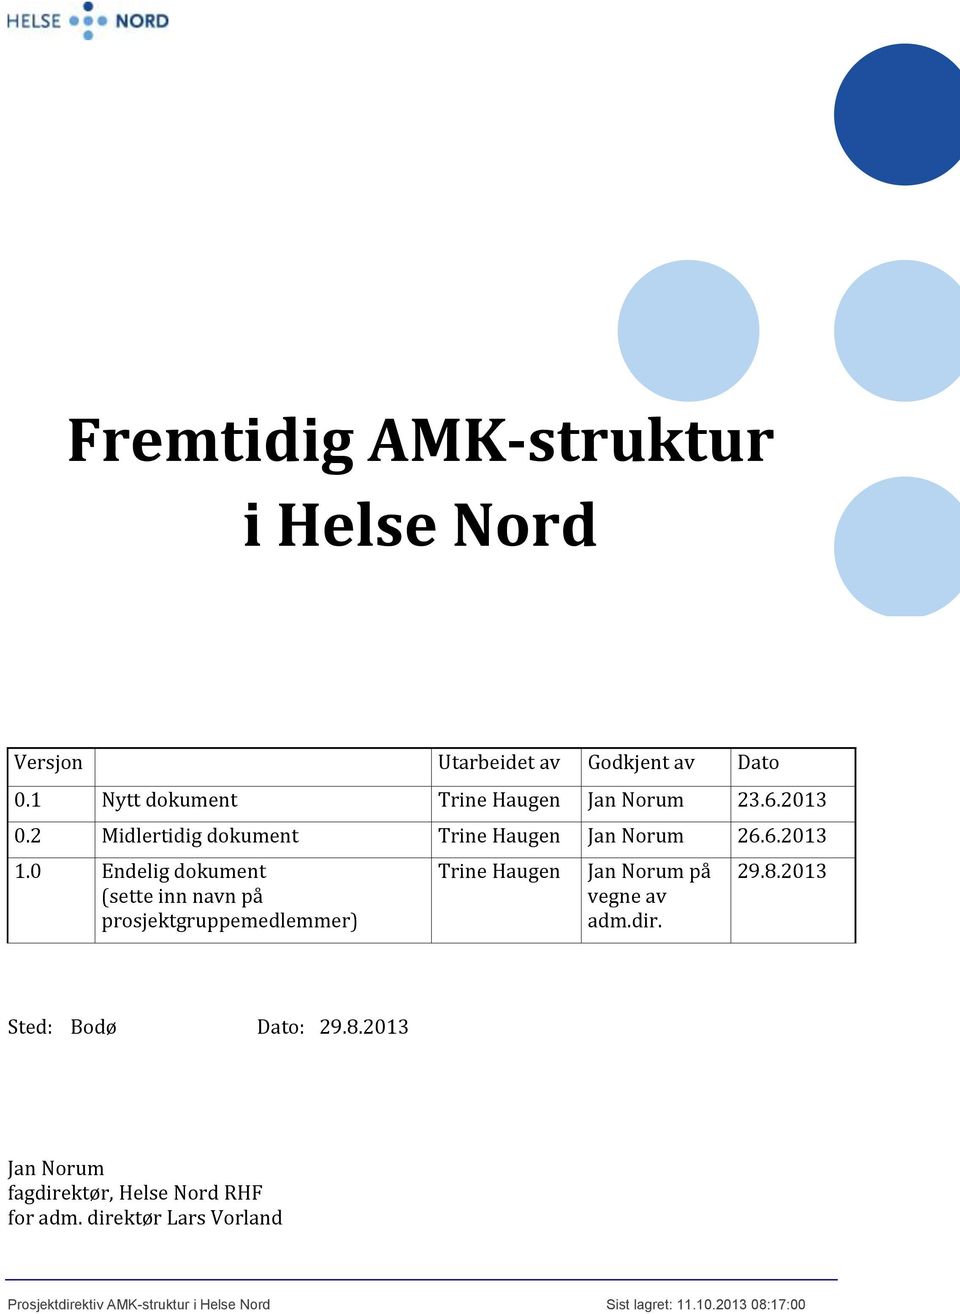 0 Endelig dokument (sette inn navn på prosjektgruppemedlemmer) Trine Haugen Jan Norum på vegne av adm.dir. 29.8.